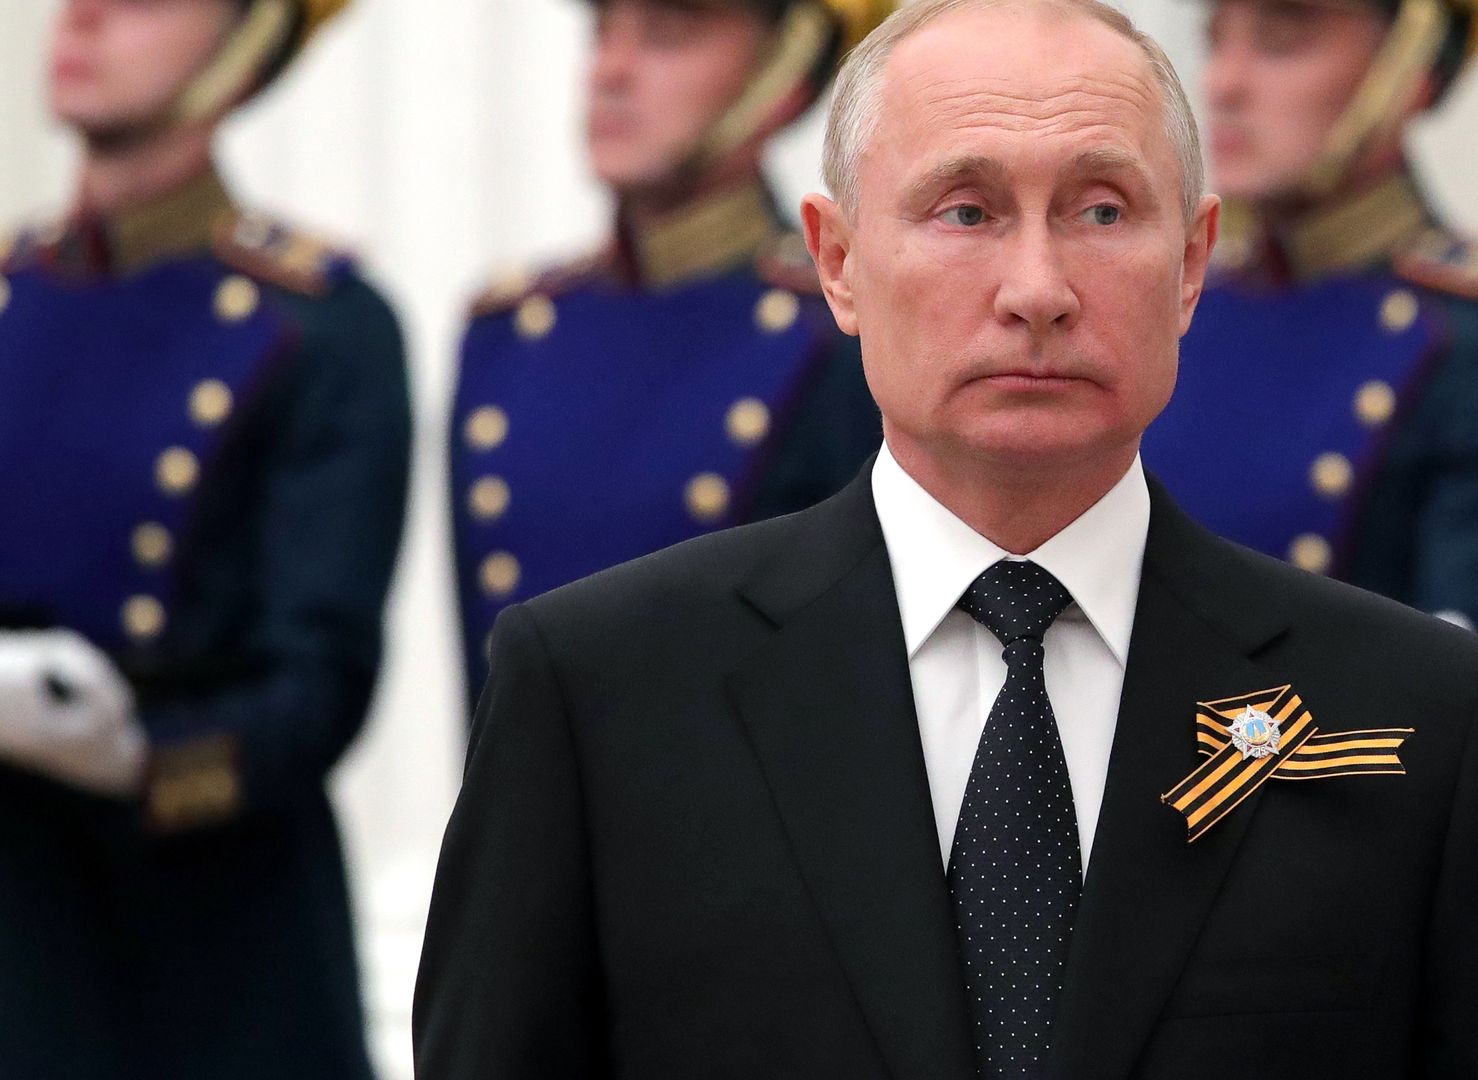 Menkiszak: Rosja stawiała na Trumpa. Patrzy na kryzys w USA i czeka, co zrobi Biden